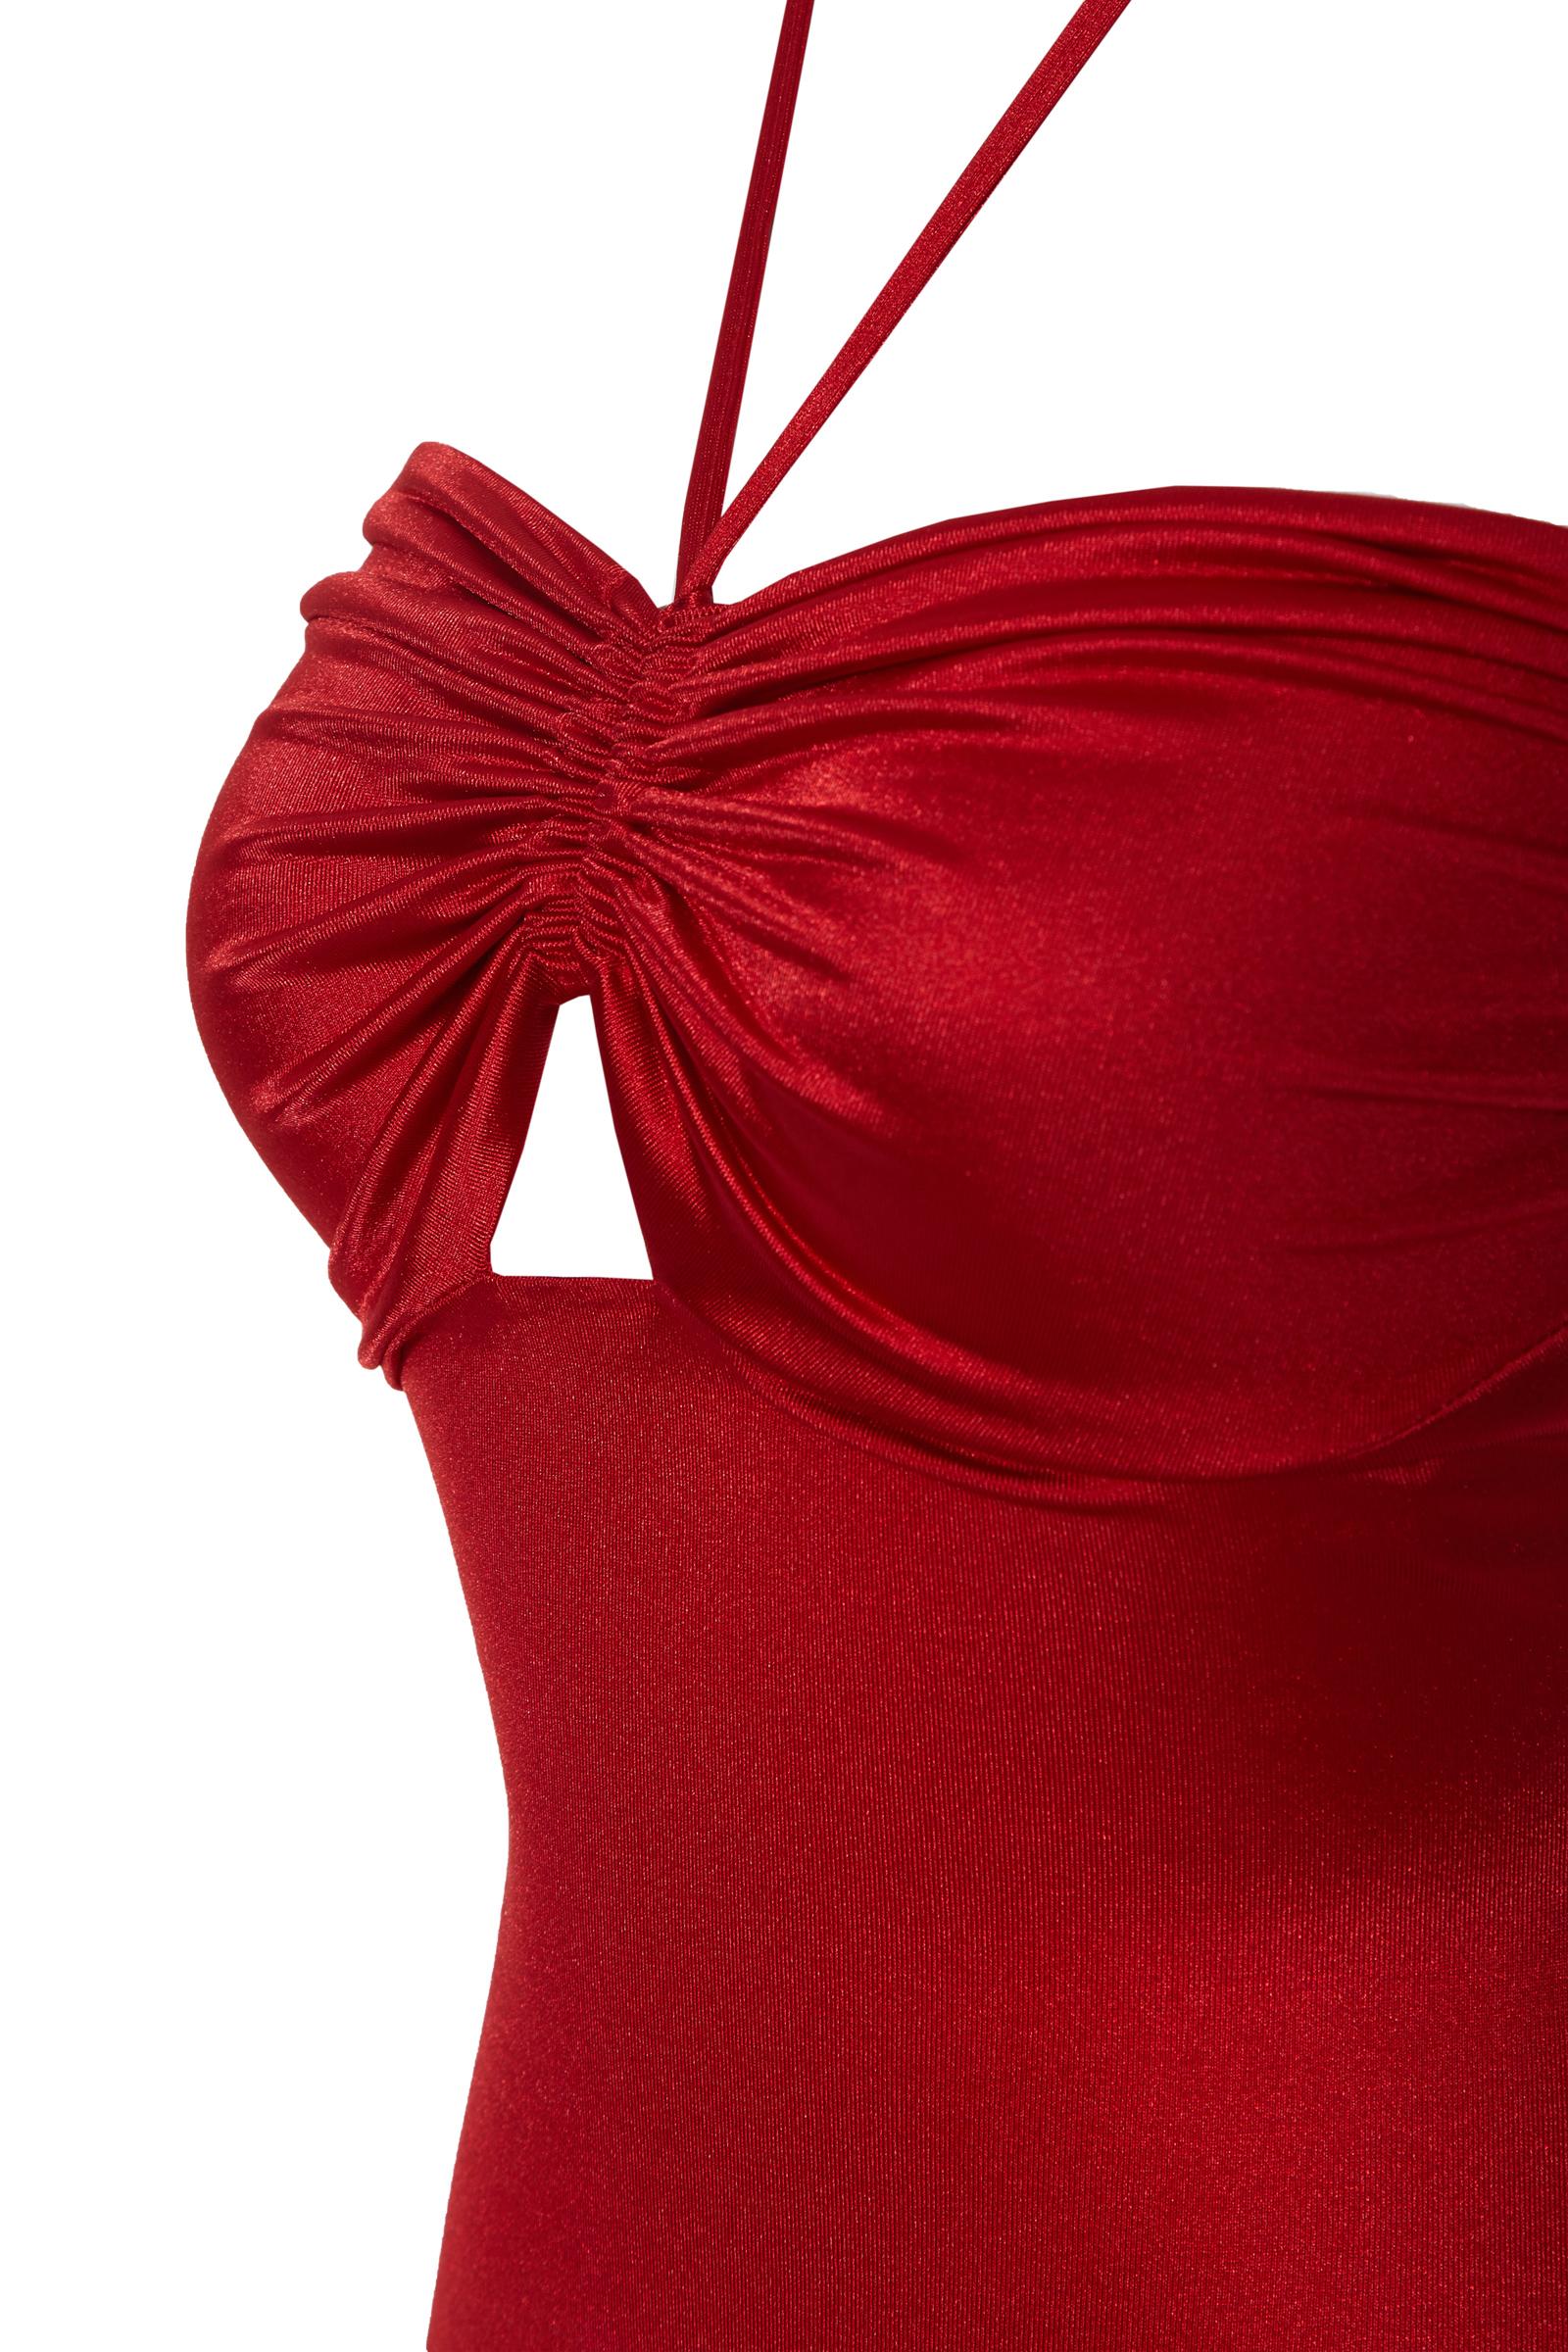 Red Satin Sleeveless Maxi Dress